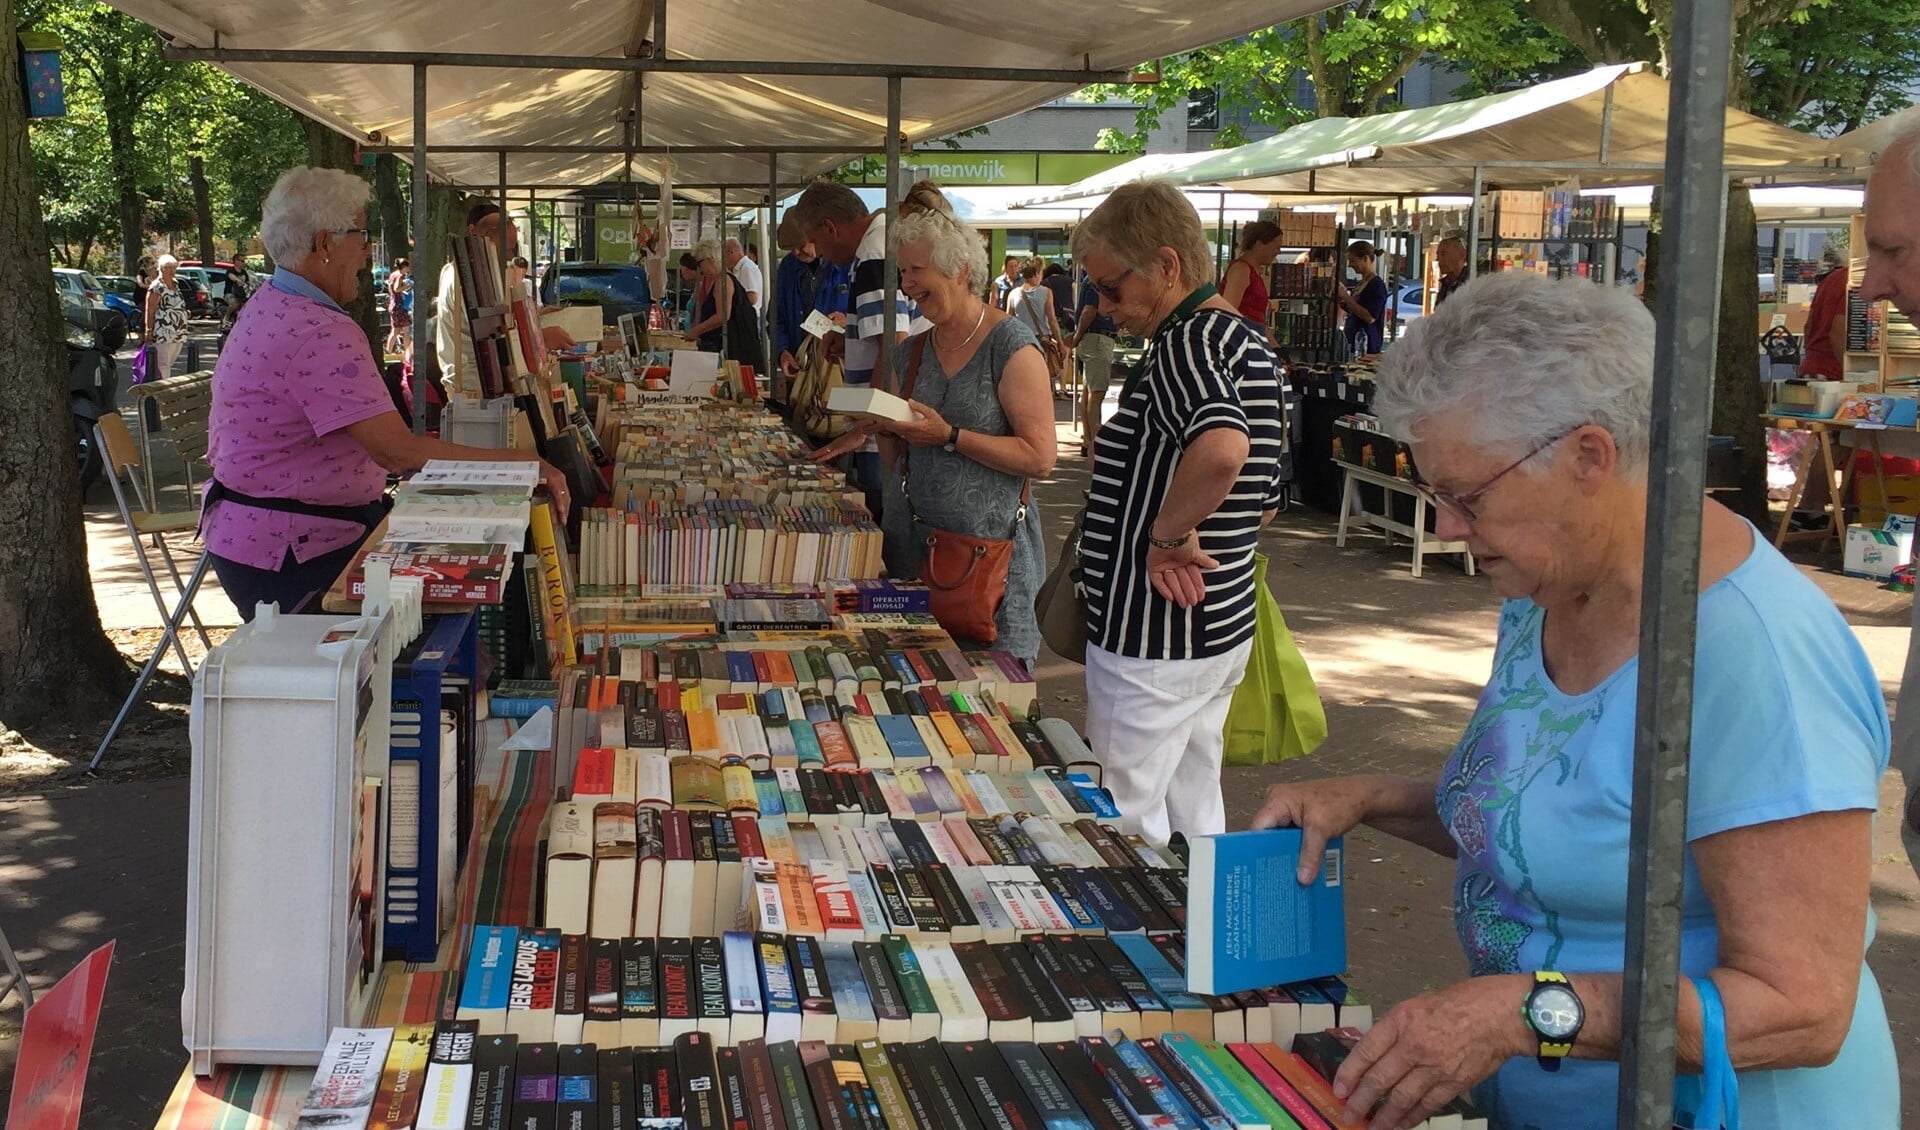 Op zondag 16 juli wordt de 'Delftse Boekenmarkt' voor de tiende keer georganiseerd op het plein aan de Elzenlaan in de wijk Vrijeban. 